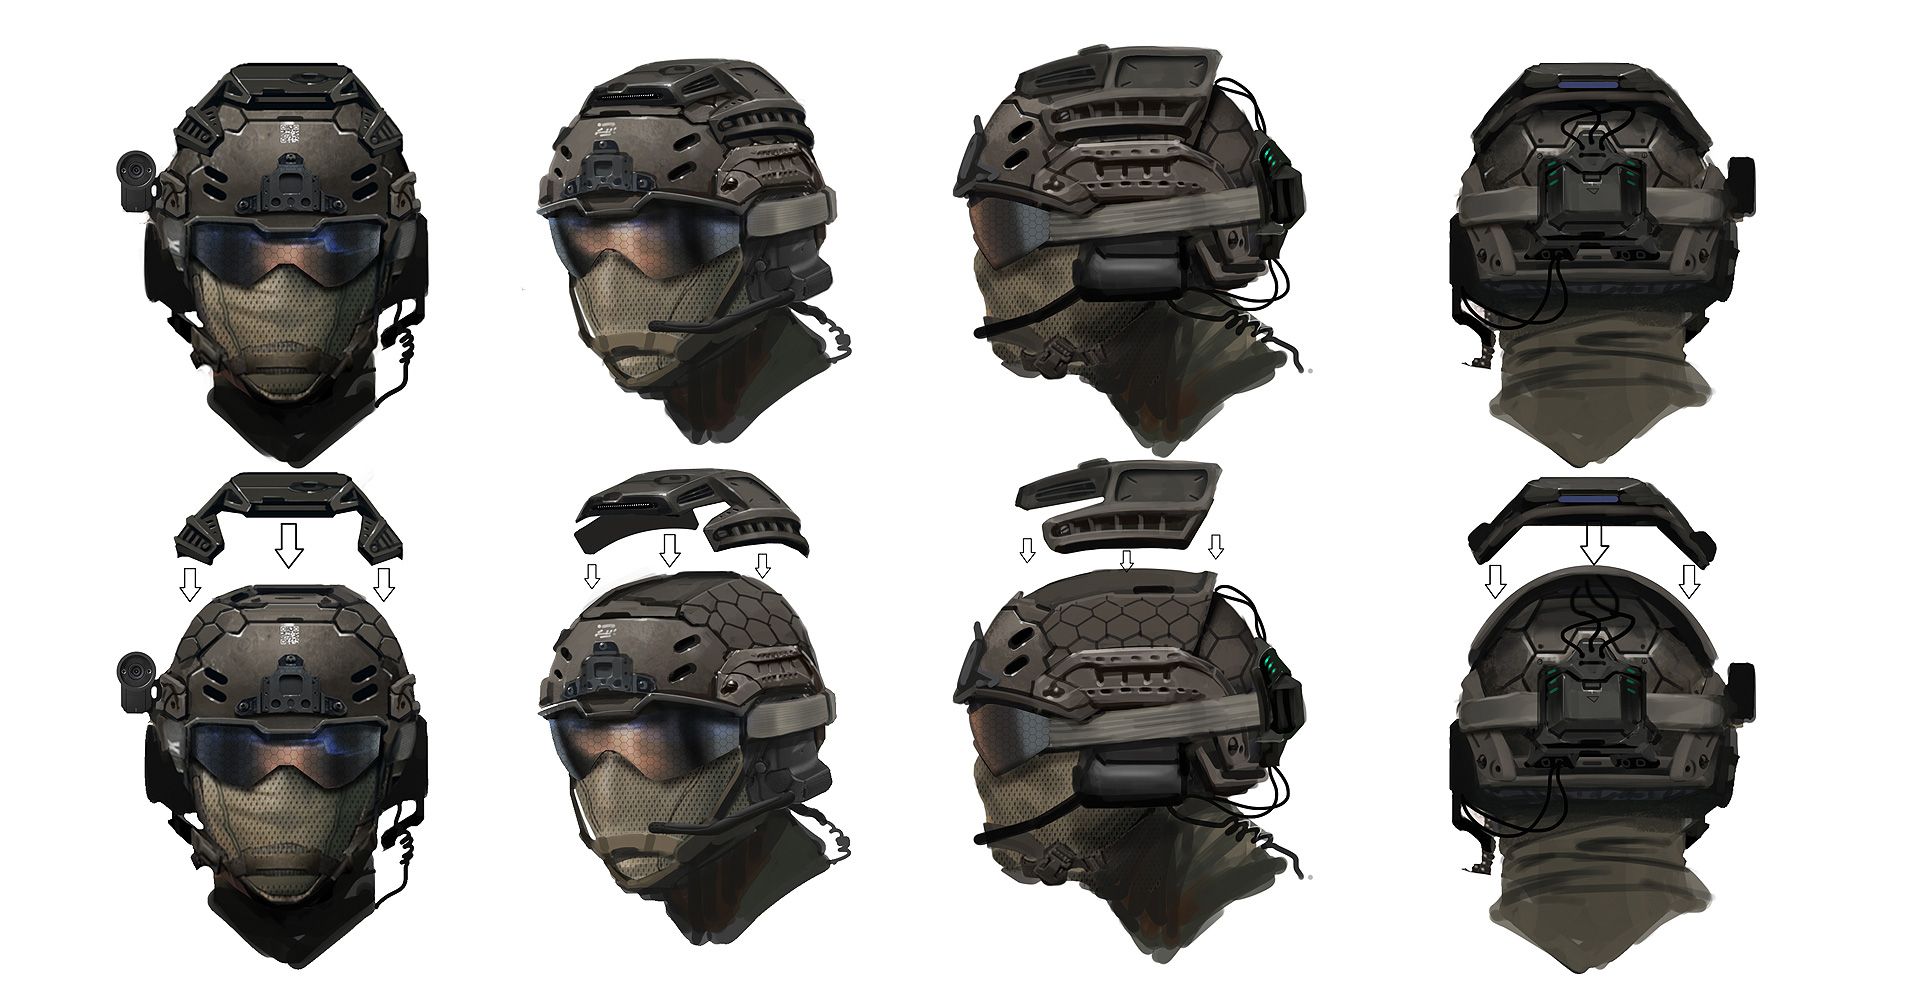 Референс альфа. Шлем атлас мк2 gen2. Шлем атлас Cod 11. Шлем Black ops. Шлем Recon Tactical.